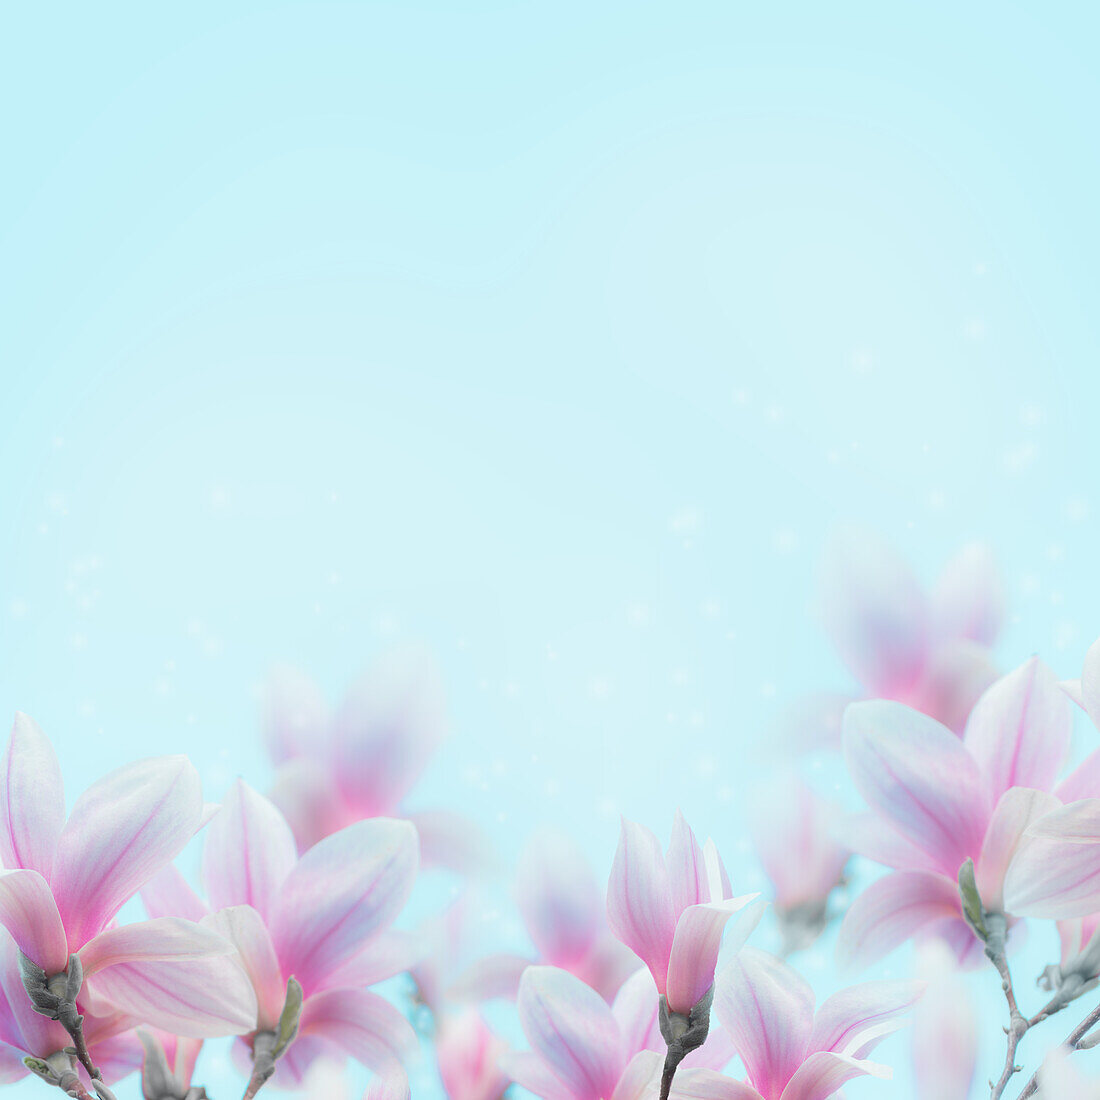 Lovely Magnolia Blumen blühen Hintergrund auf blau. Frühling Natur Konzept